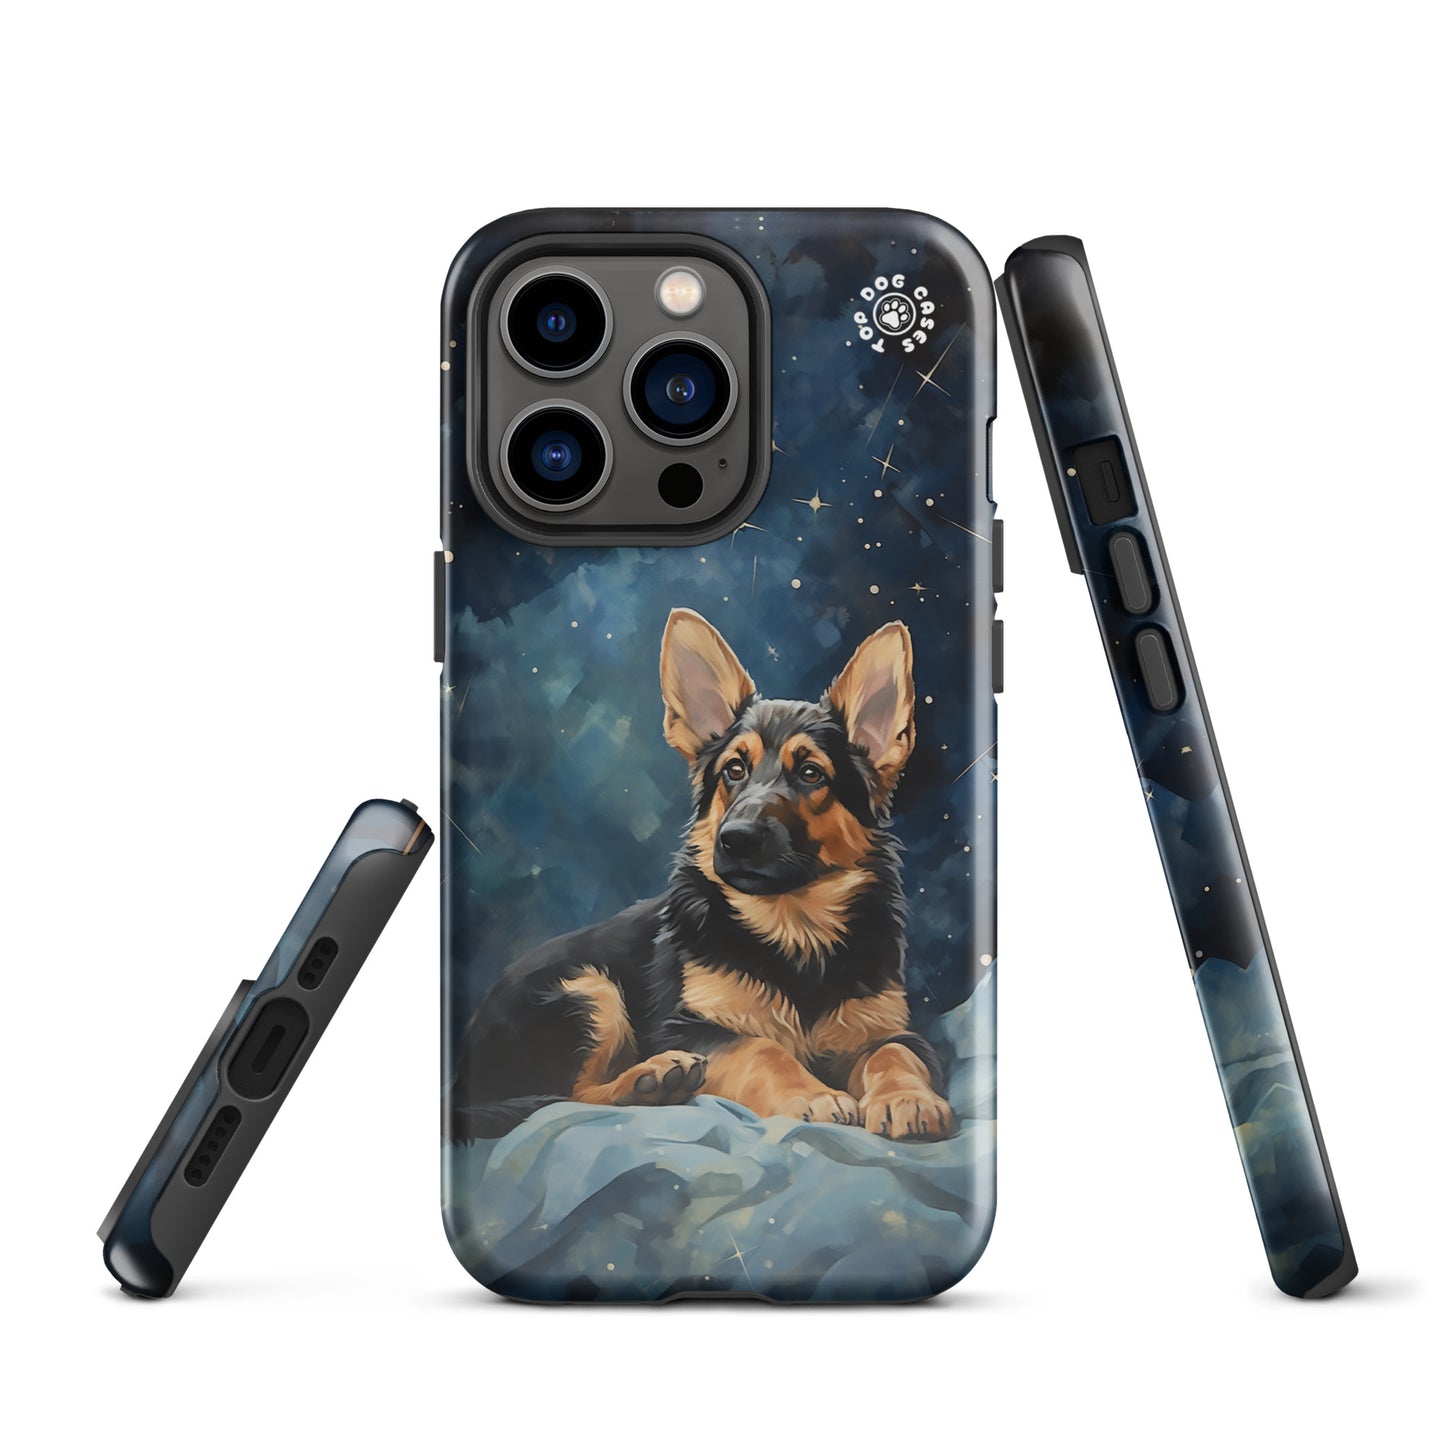 German Shepherd - iPhone Case - Cute Phone Cases